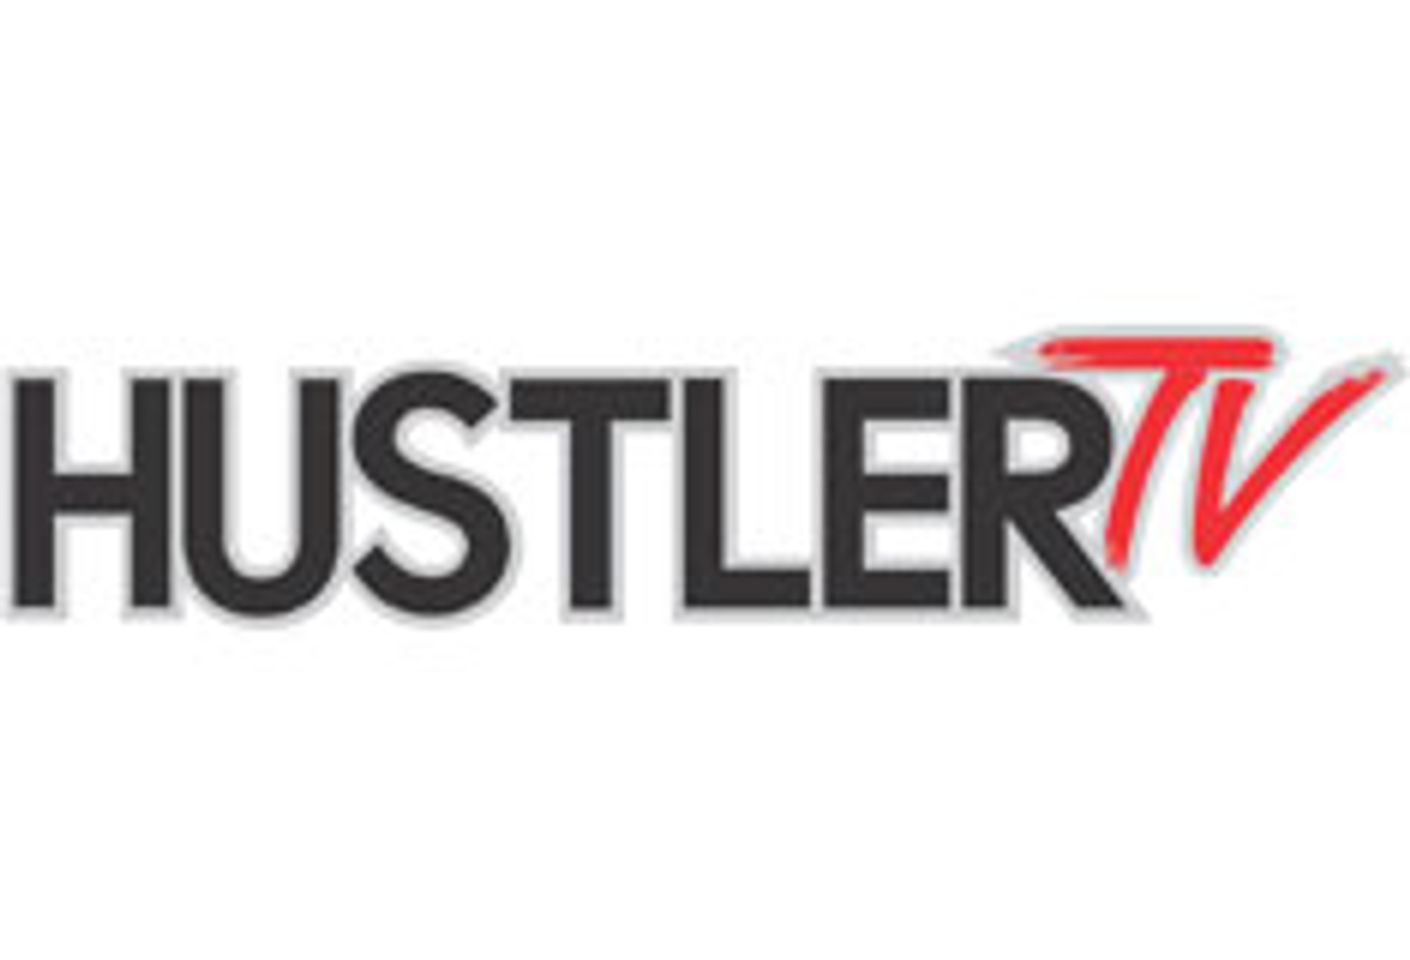 Hustler TV Signs Defiance and Torrid